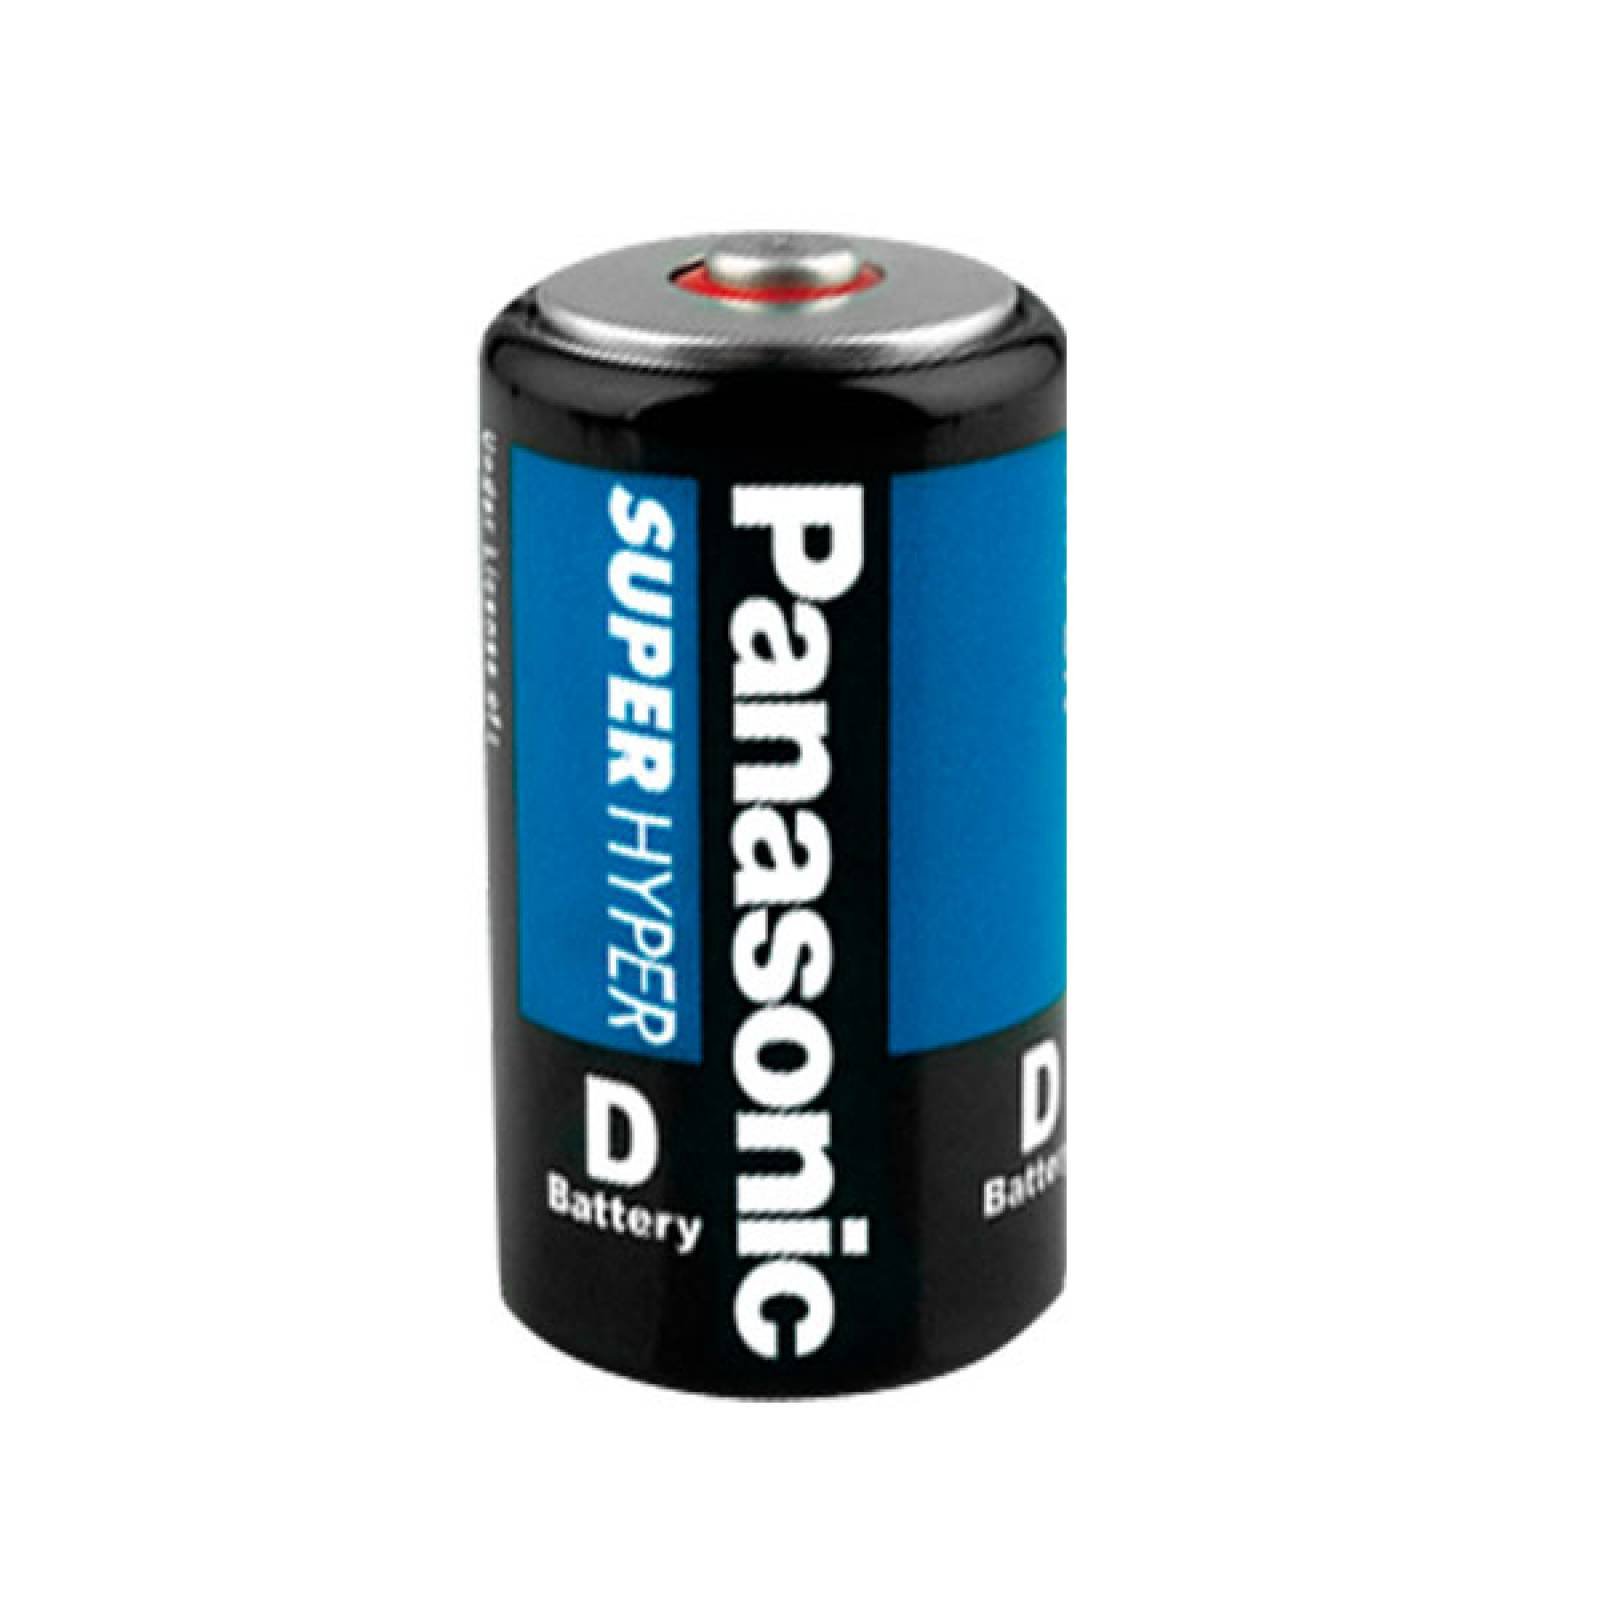 Baterias Pilas Carbon D 2 Piezas Panasonic